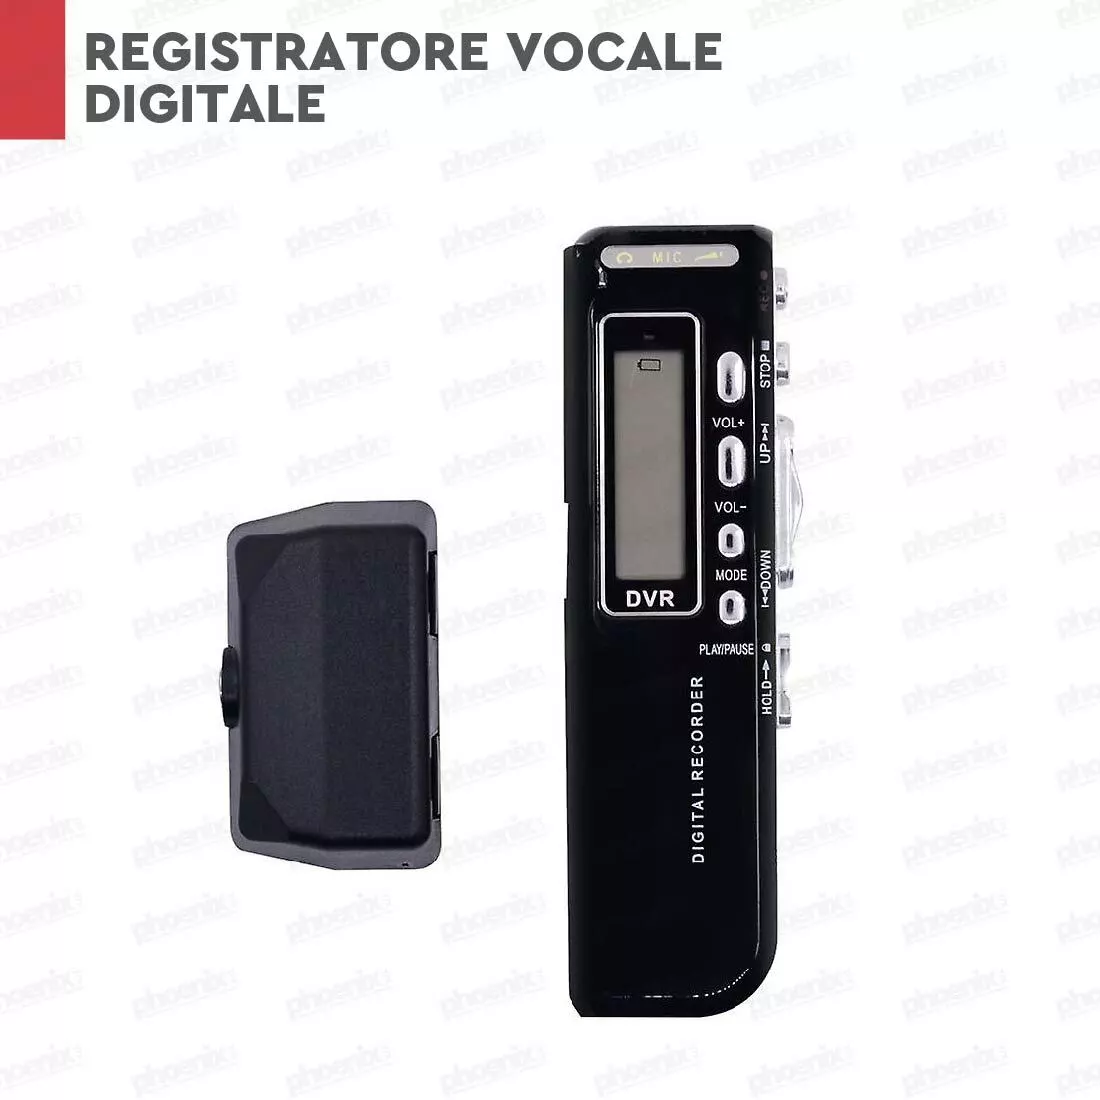 REGISTRATORE AUDIO VOCALE PORTATILE MP3 USB DIGITALE VOICE RECORDER 8 GB